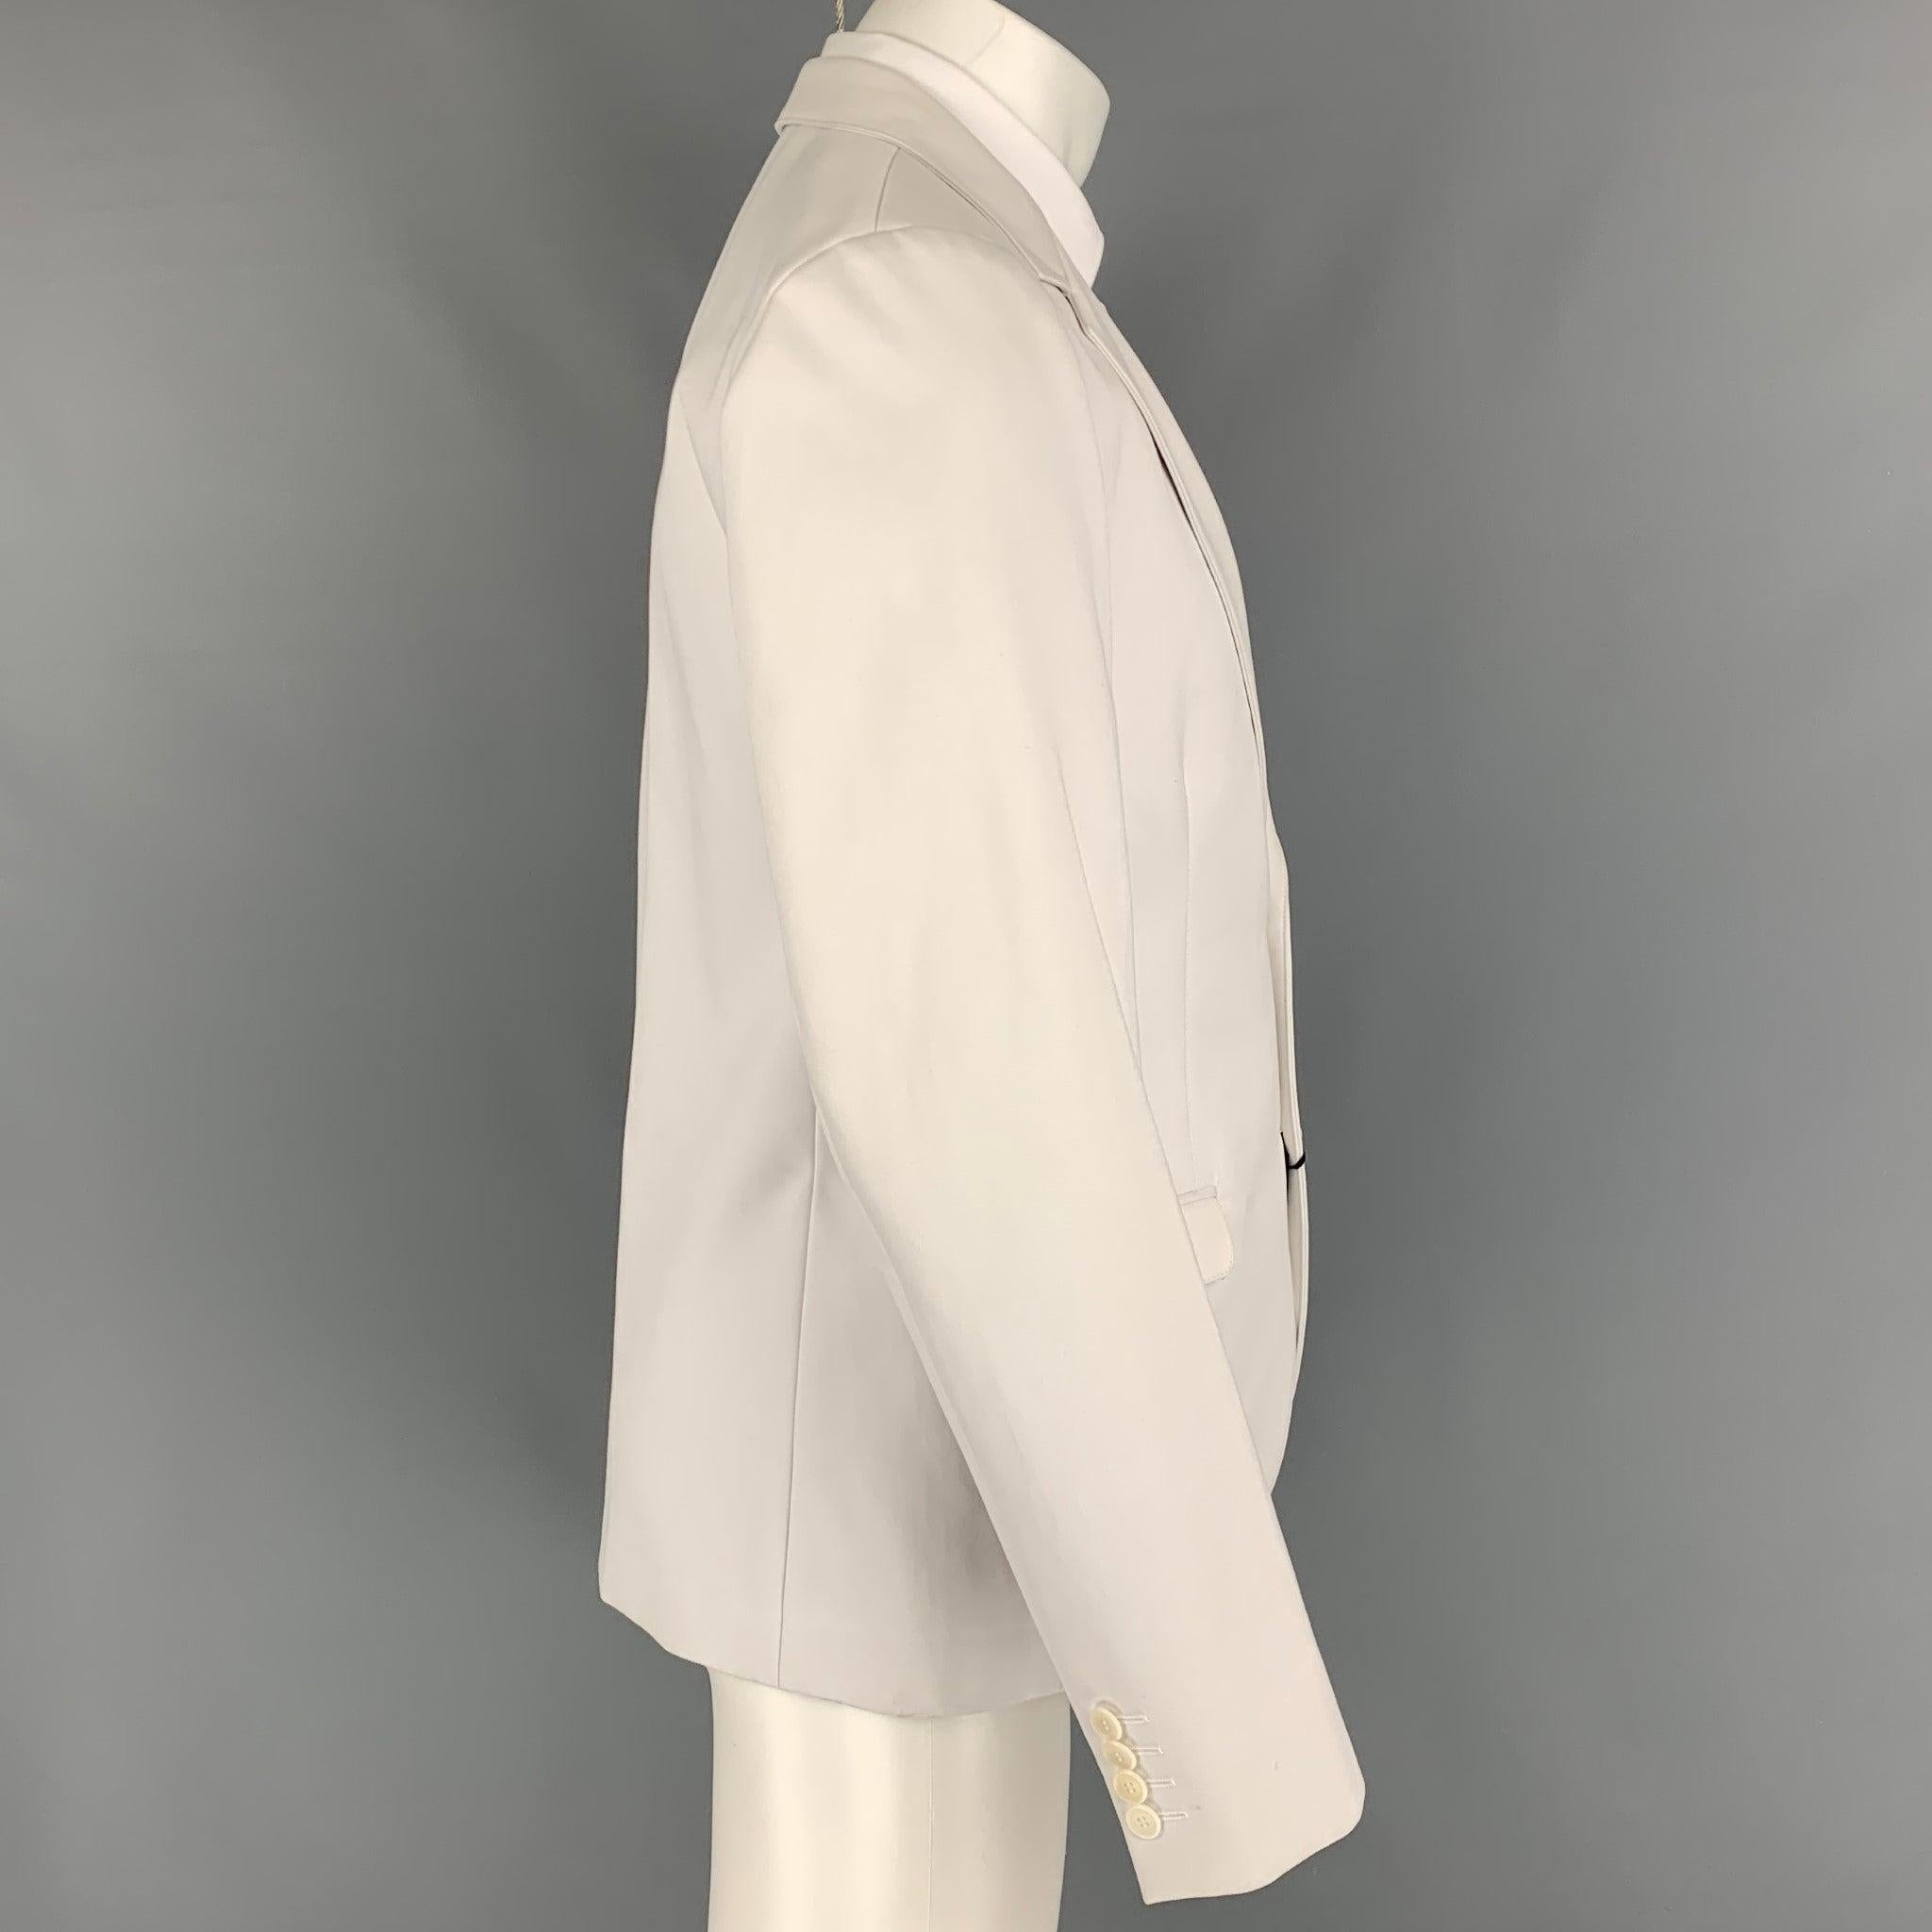 Men's CALVIN KLEIN COLLECTION Size 40 Off White Cotton Notch Lapel Suit For Sale